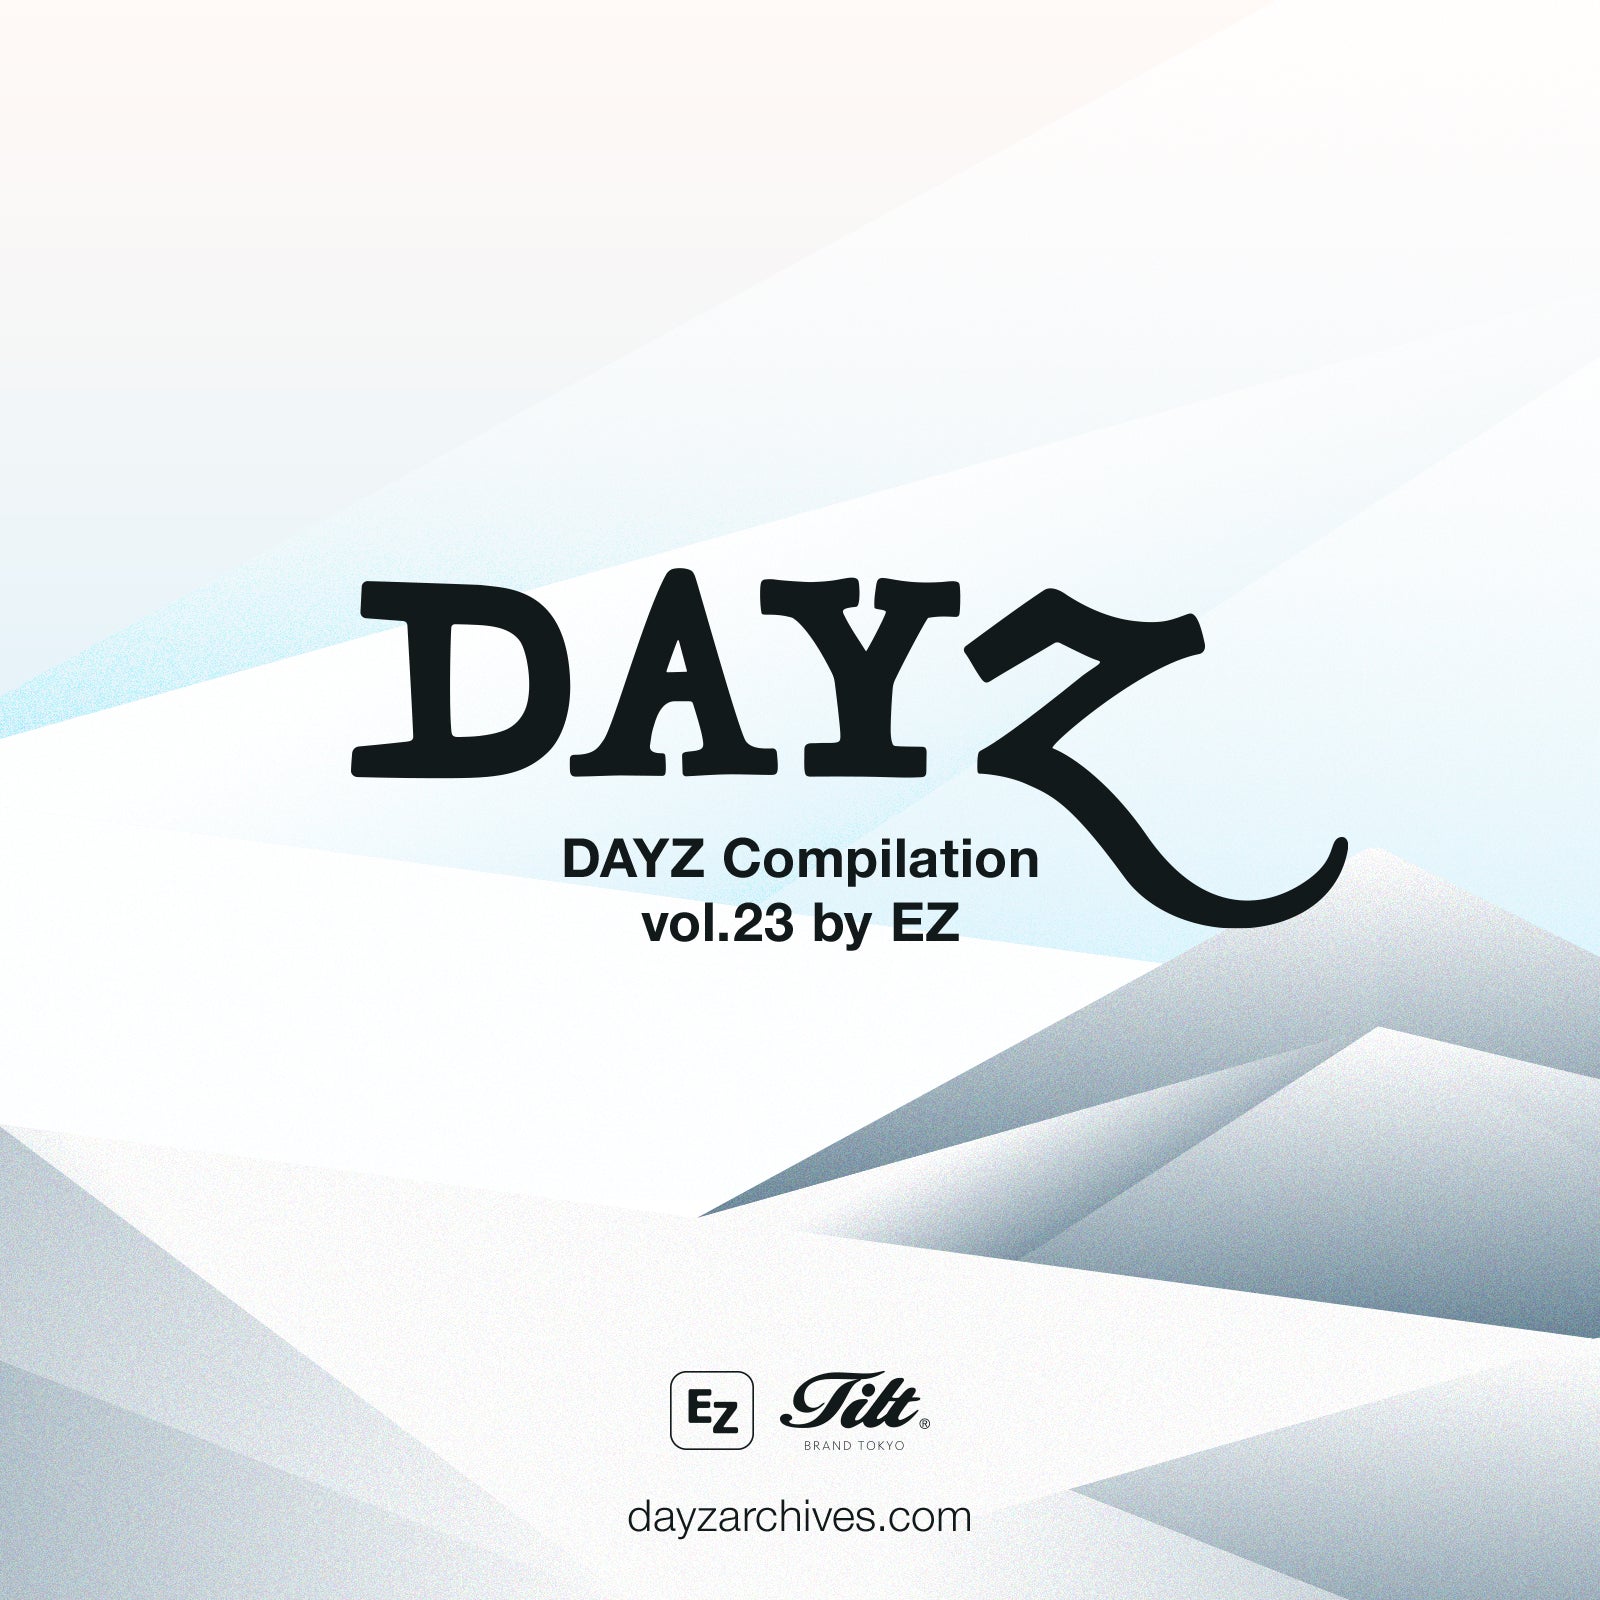 A PLAYLIST BY FRAN-KEY, DAYZ Compilation vol.12 – DAYZ ARCHIVES